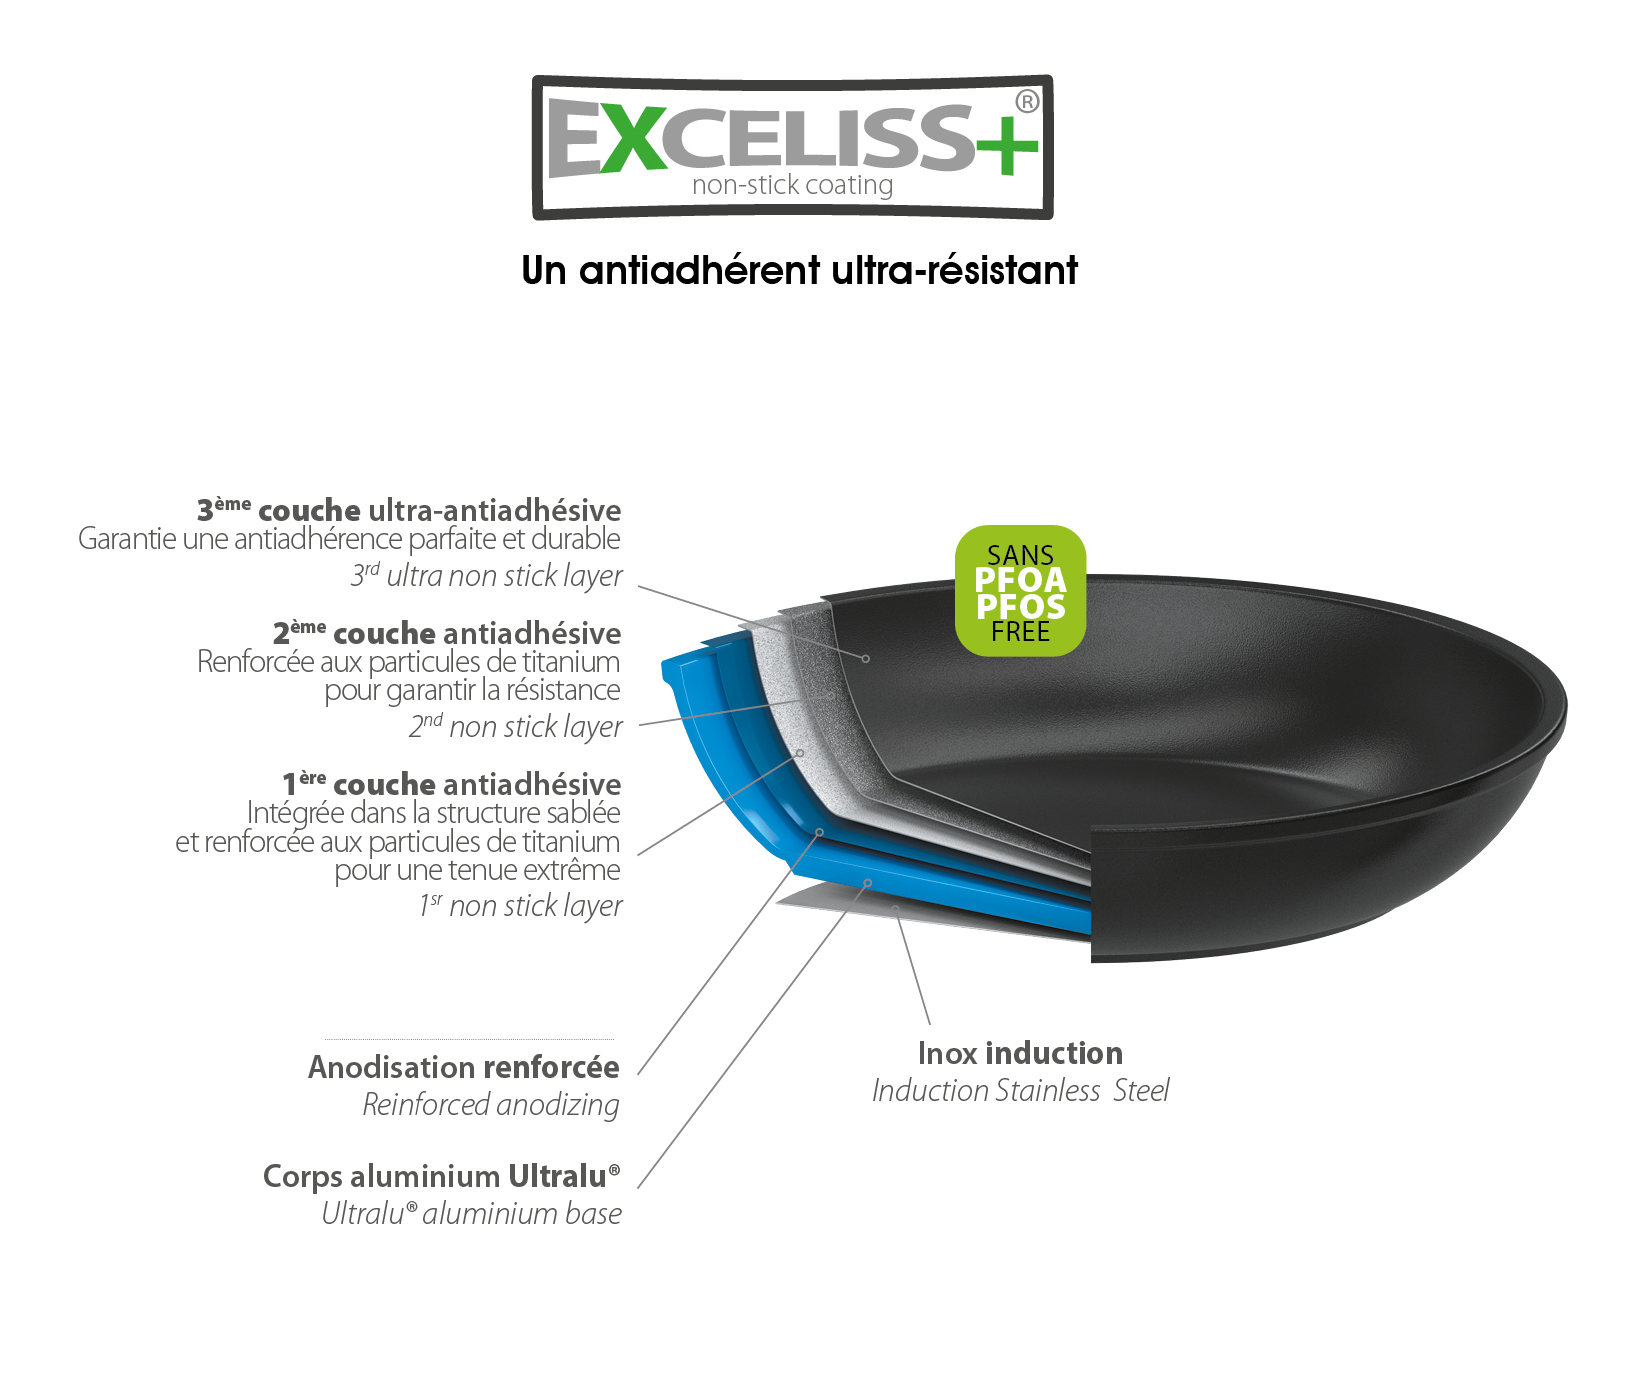 Exceliss+®, le revêtement anti-adhérent sélectionné pour ses qualités d'anti-adhérence et de résistance exceptionnelles